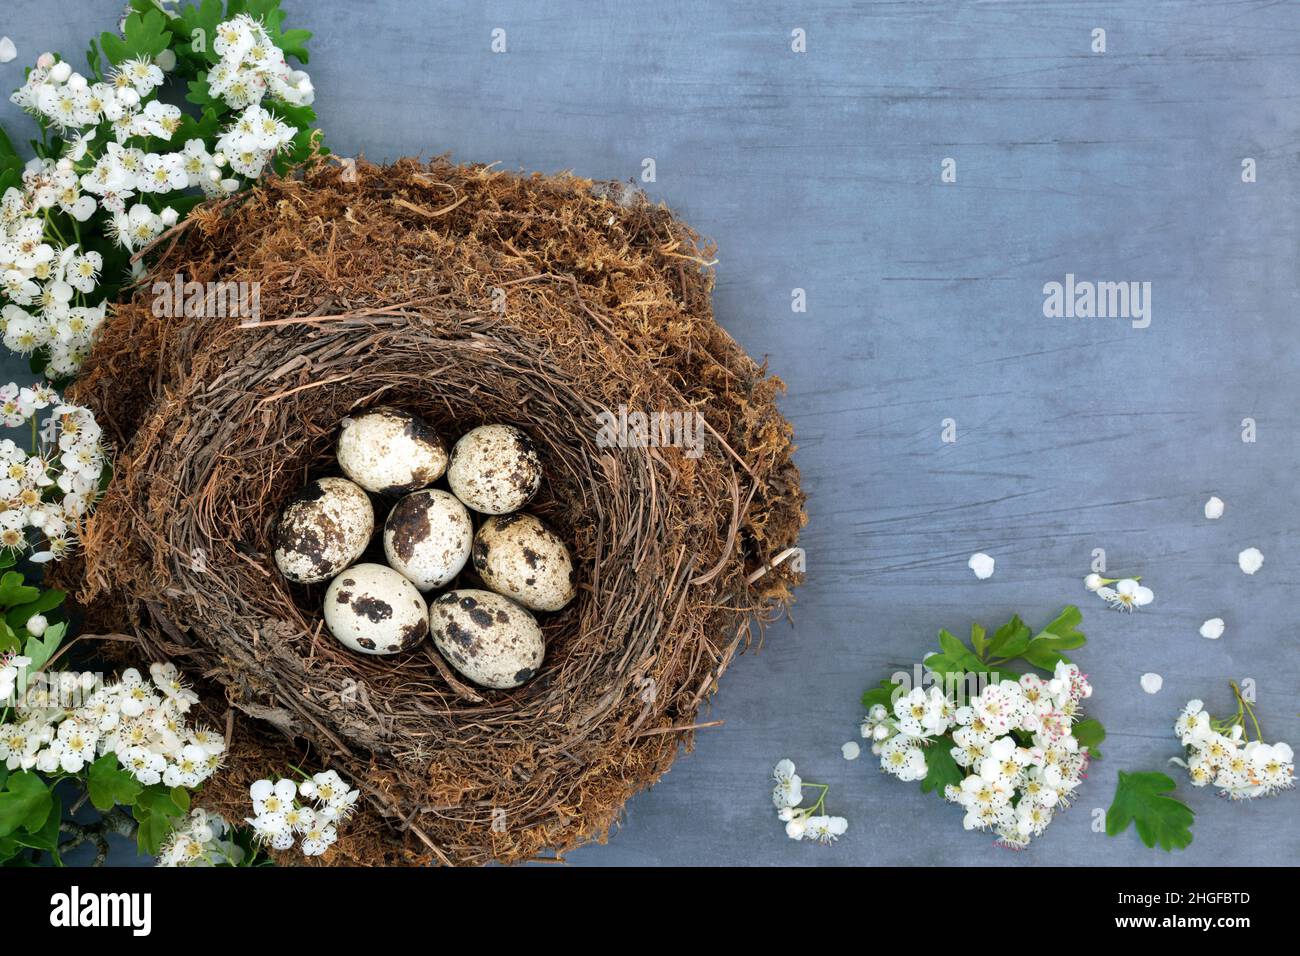 Les oeufs de caille dans un nid d'oiseaux avec la fleur d'aubépine de printemps.Aliments biologiques frais sains riches en protéines et oméga 3 pour stimuler le système immunitaire. Banque D'Images